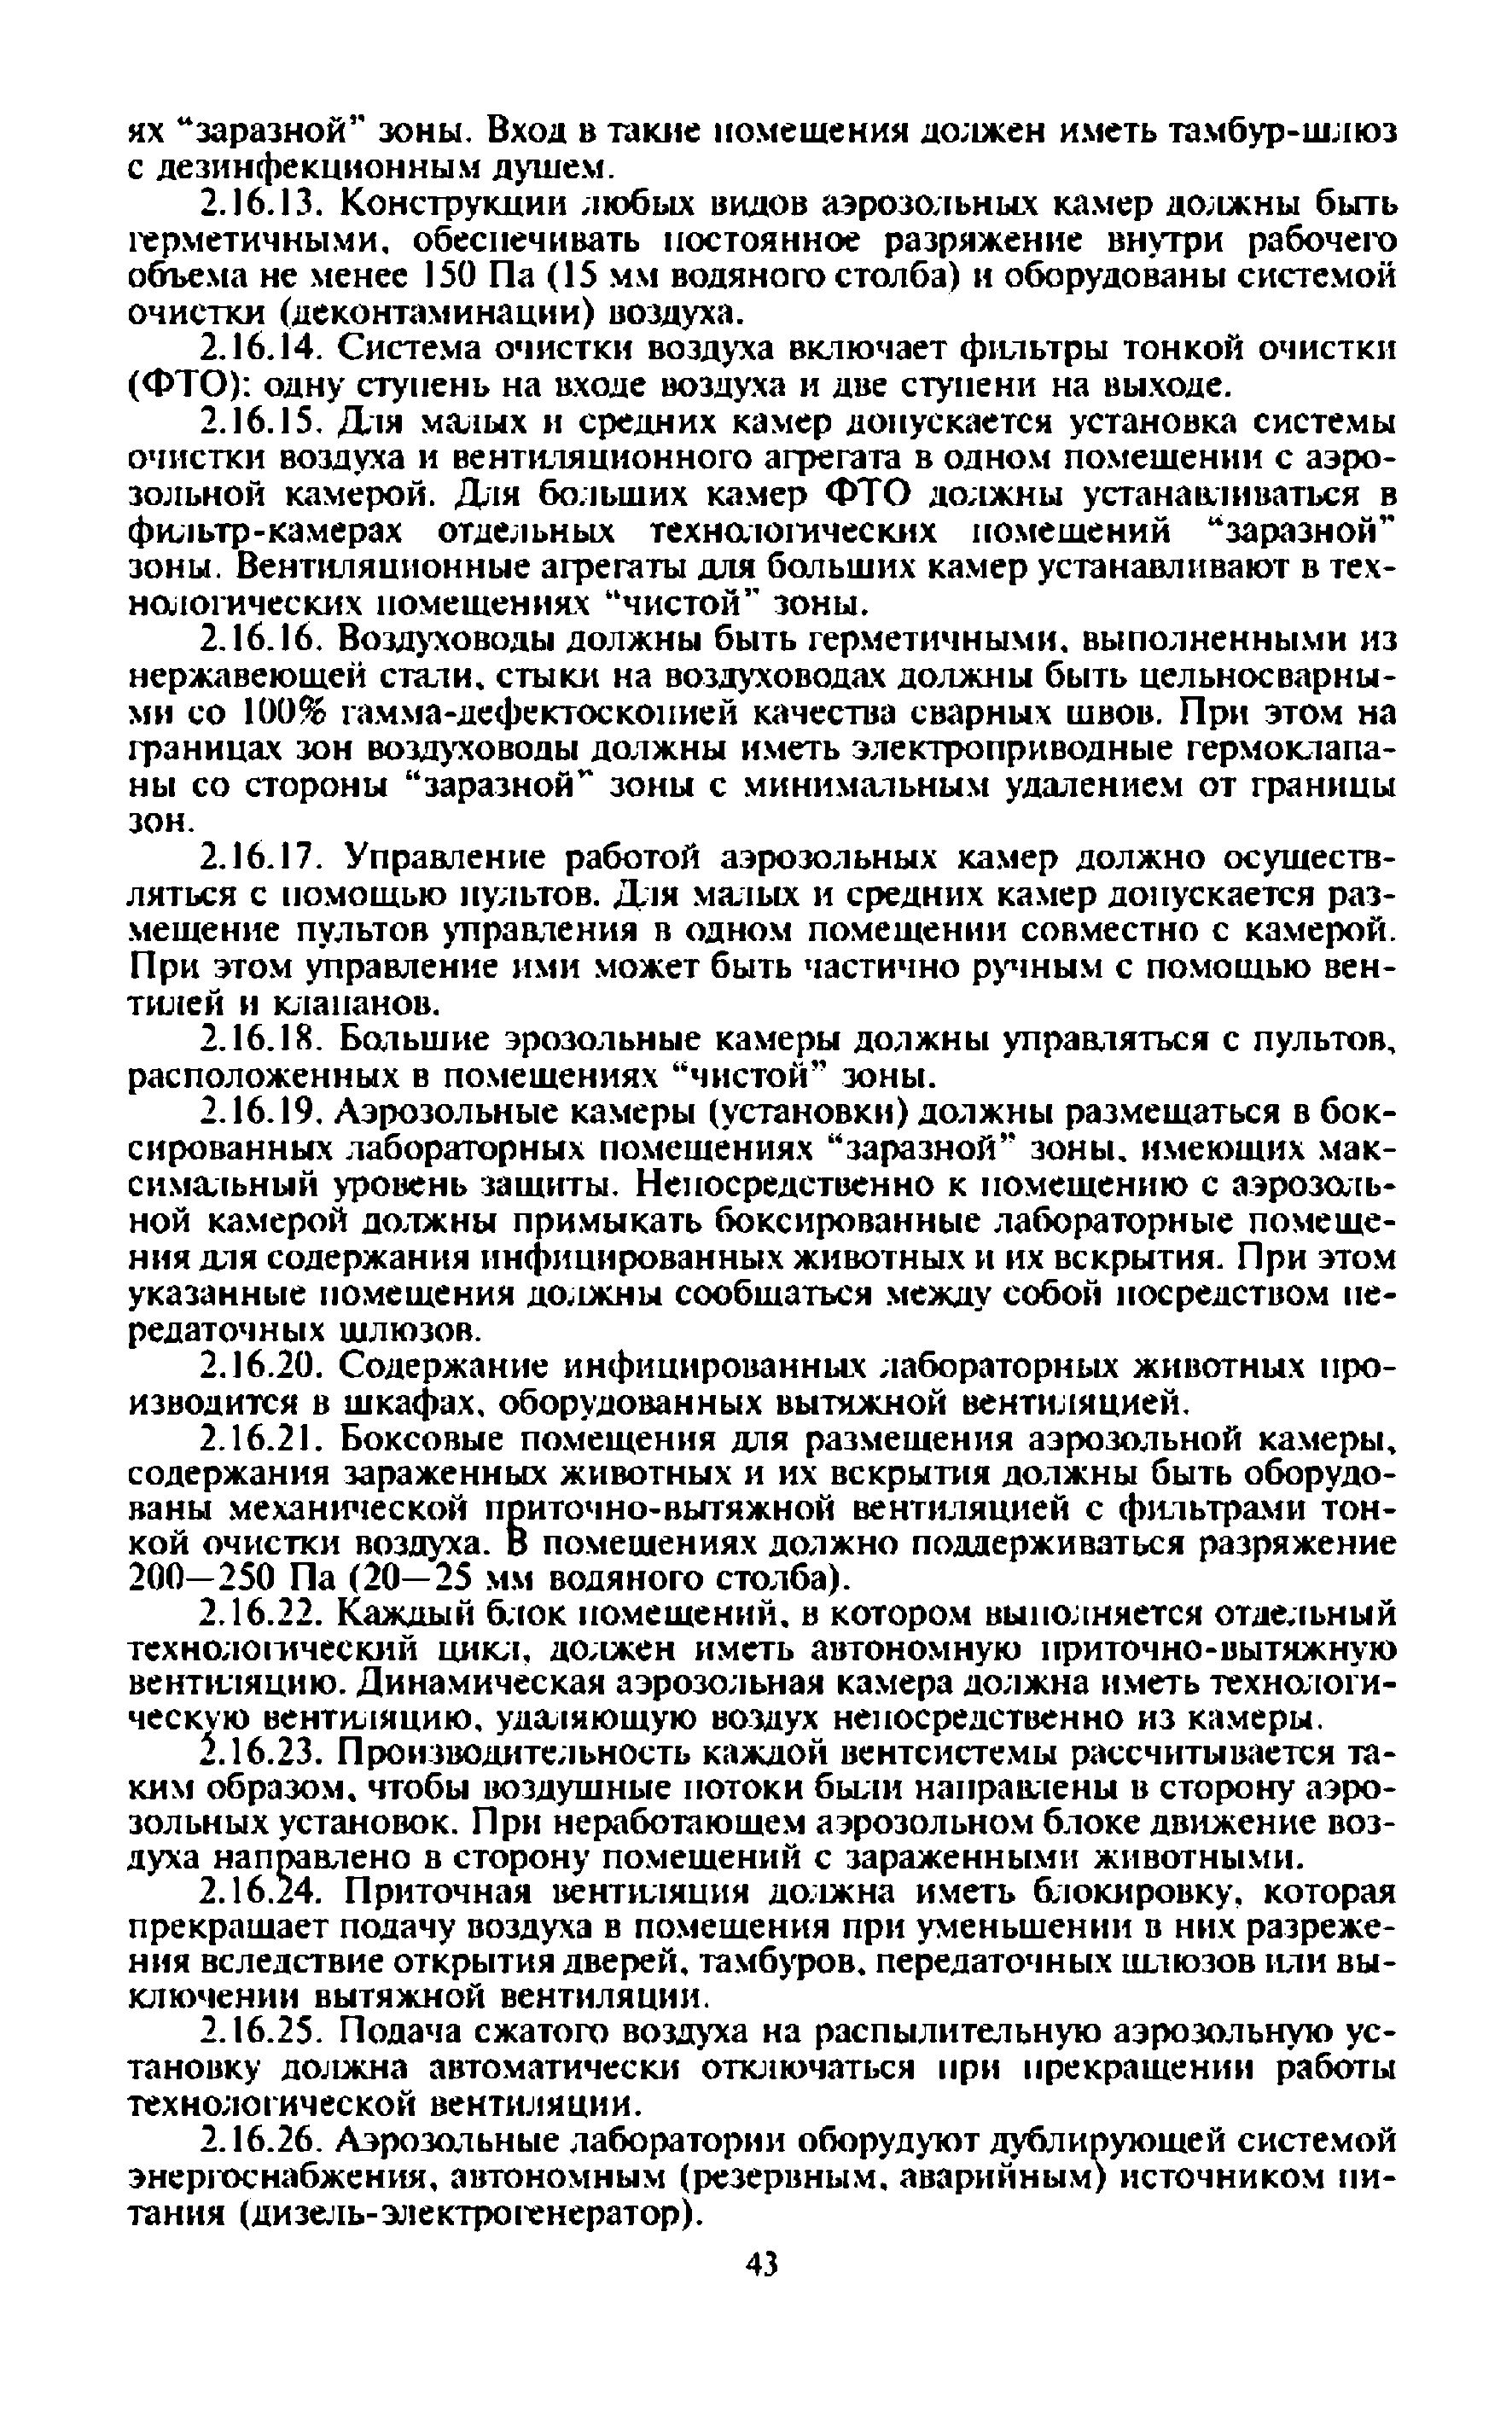 Изменения и дополнения № 1 (СП 1.3.2628-10)